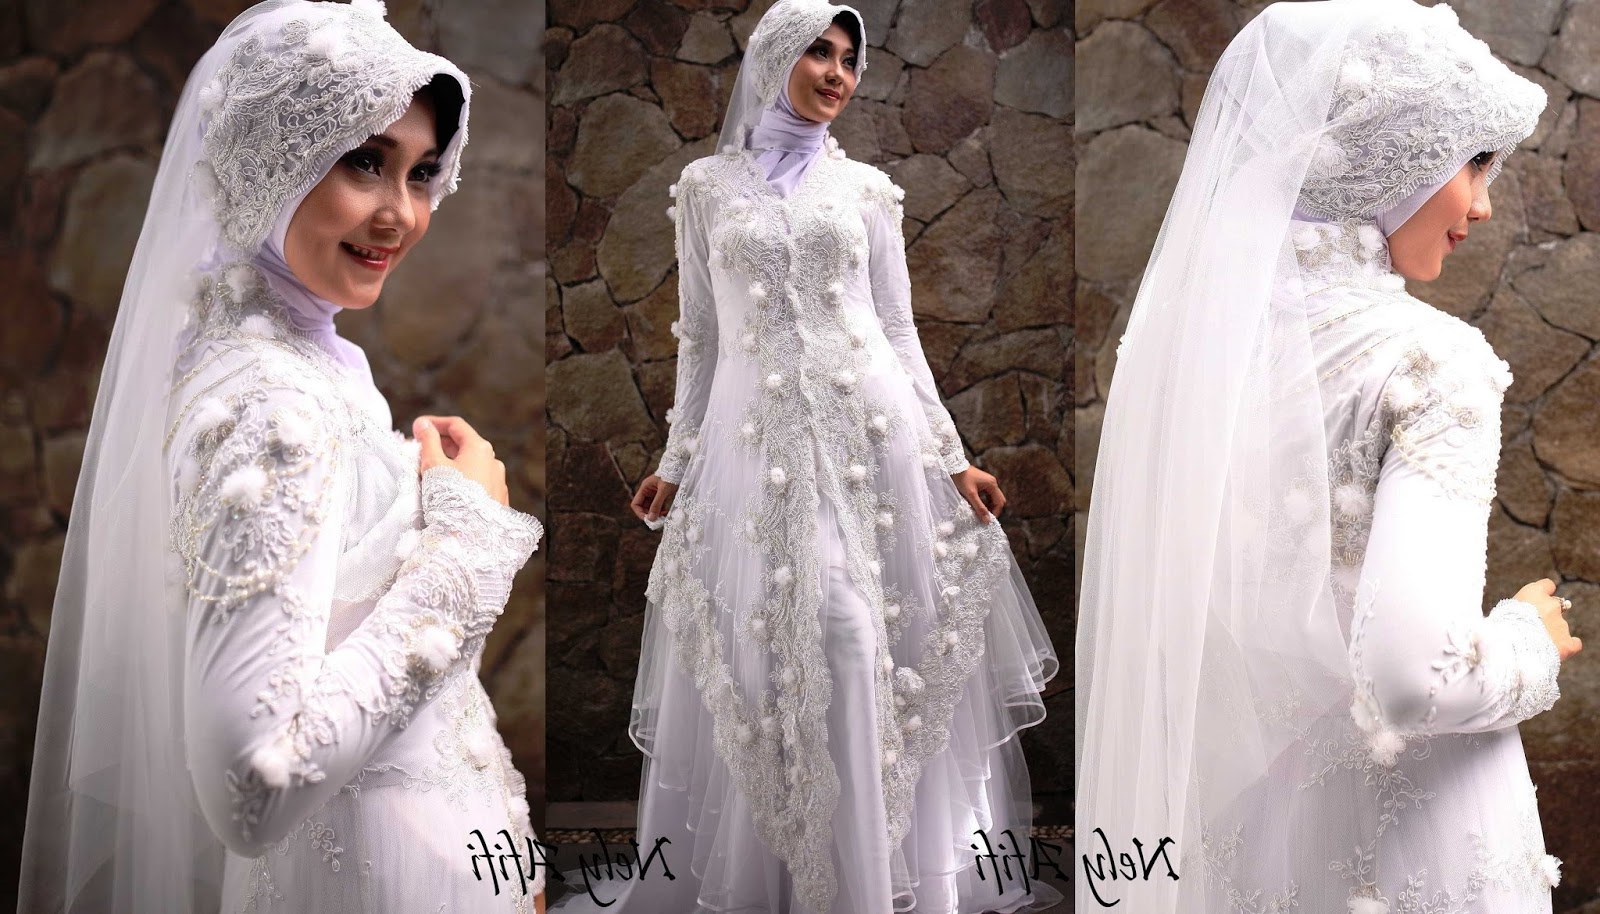 Model Gaun Muslimah Pengantin Zwd9 43 Inspirasi Terpopuler Baju Pengantin Muslim Sederhana Putih